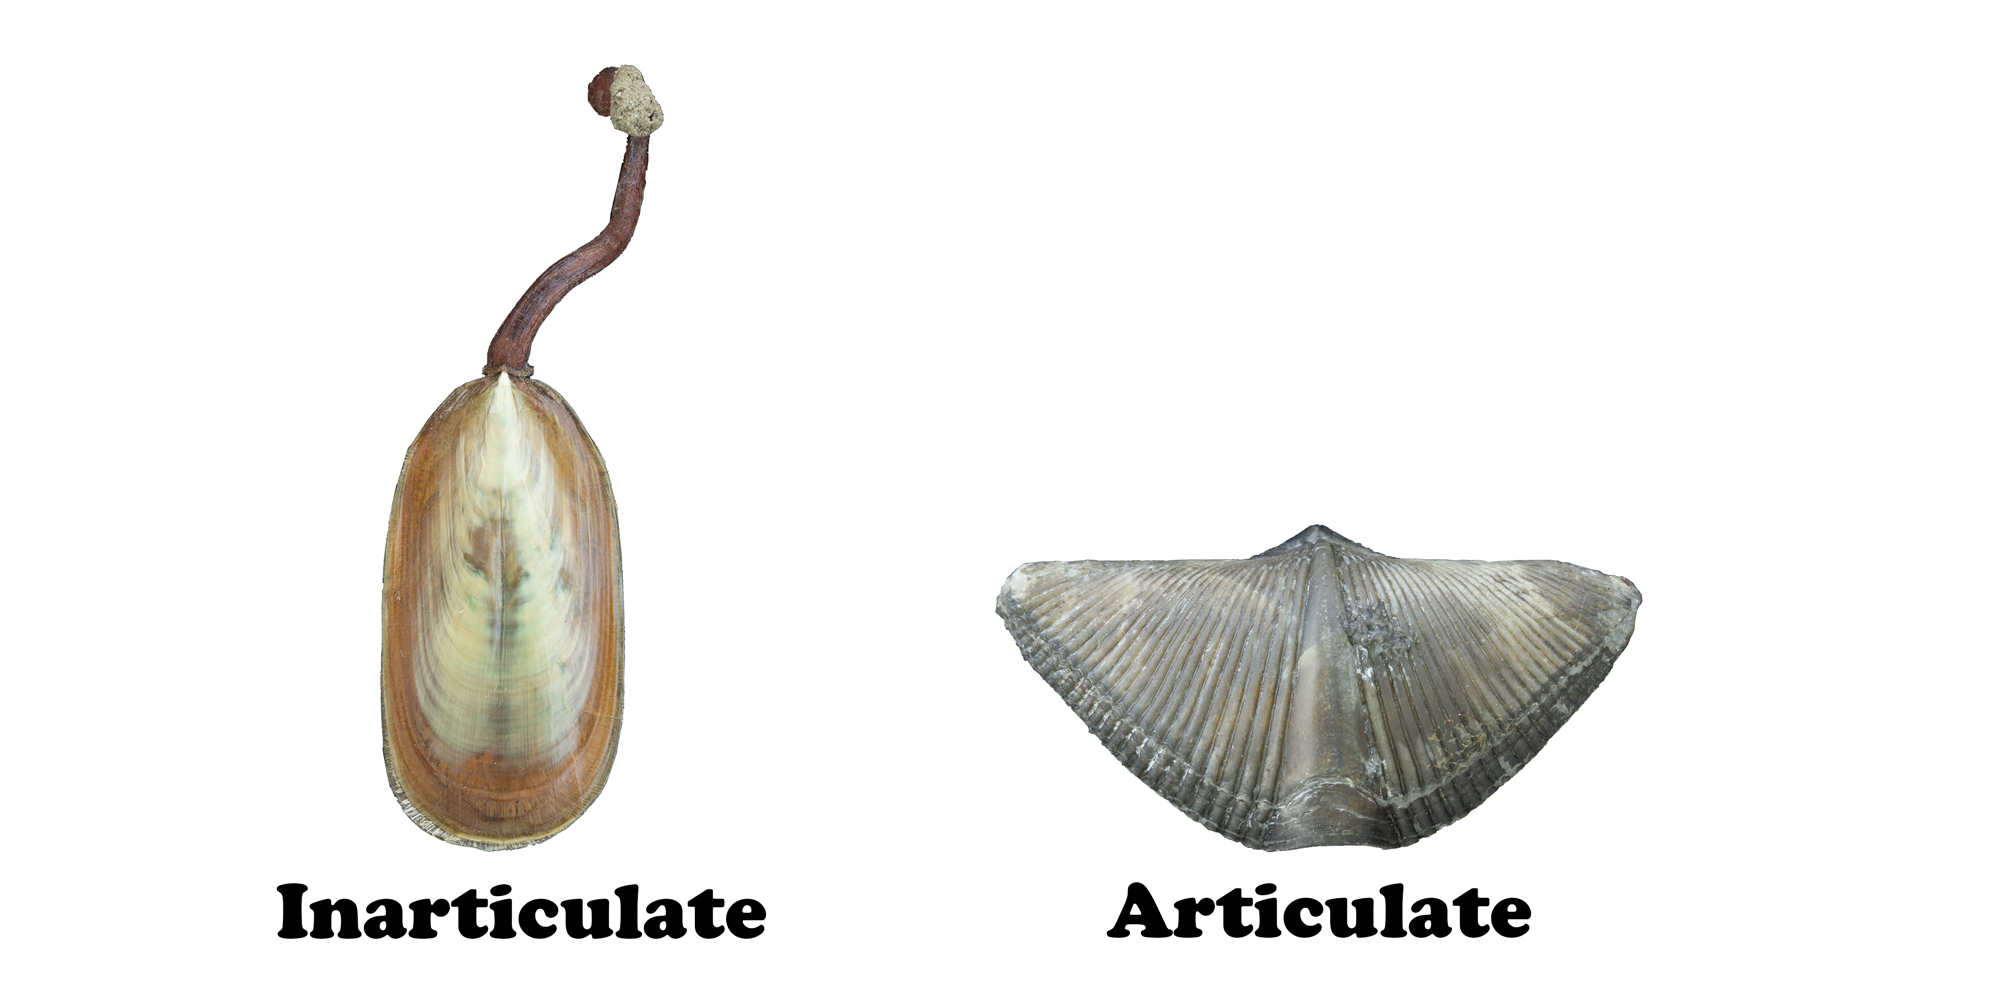 Comparison of an inarticulate and articulate brachiopod